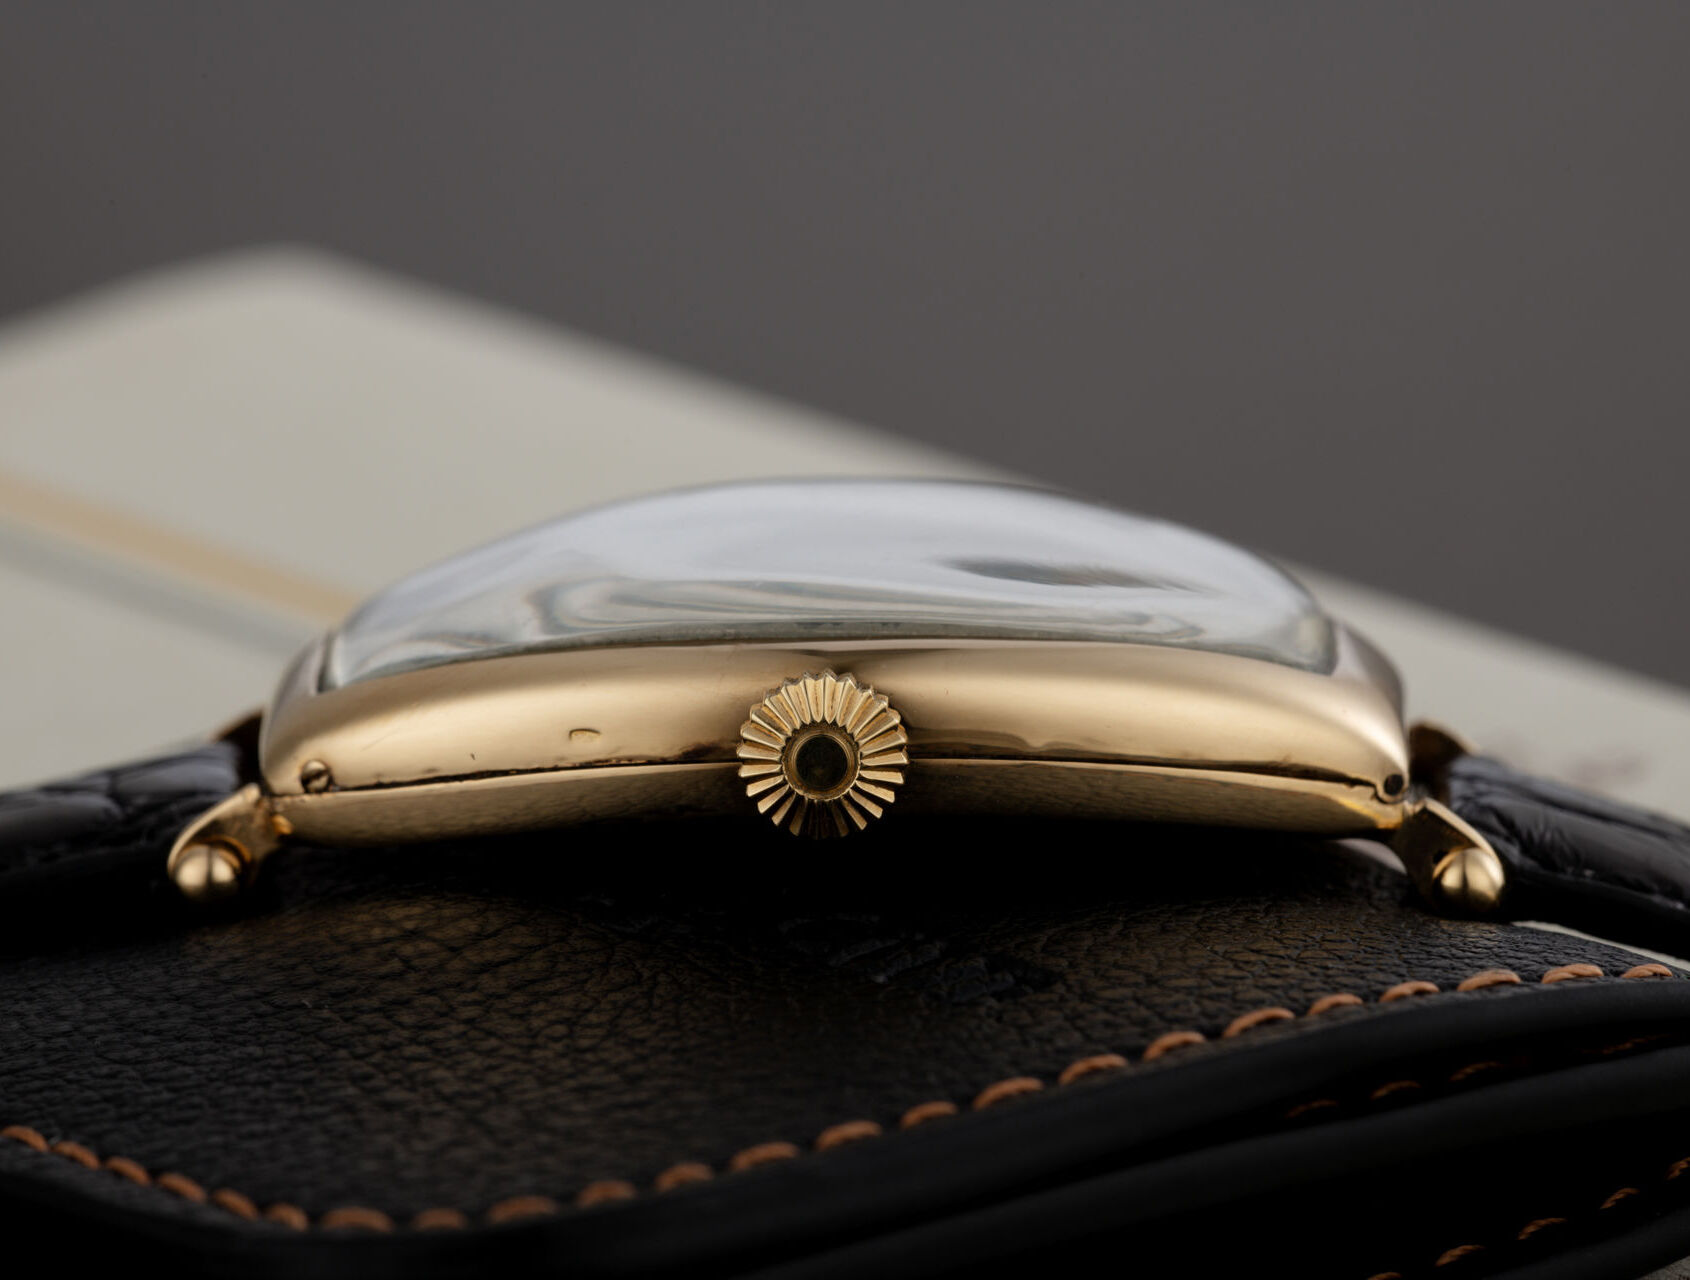  | Rare Early Large Wristwatch | Patek Philippe Chronometro Gondolo